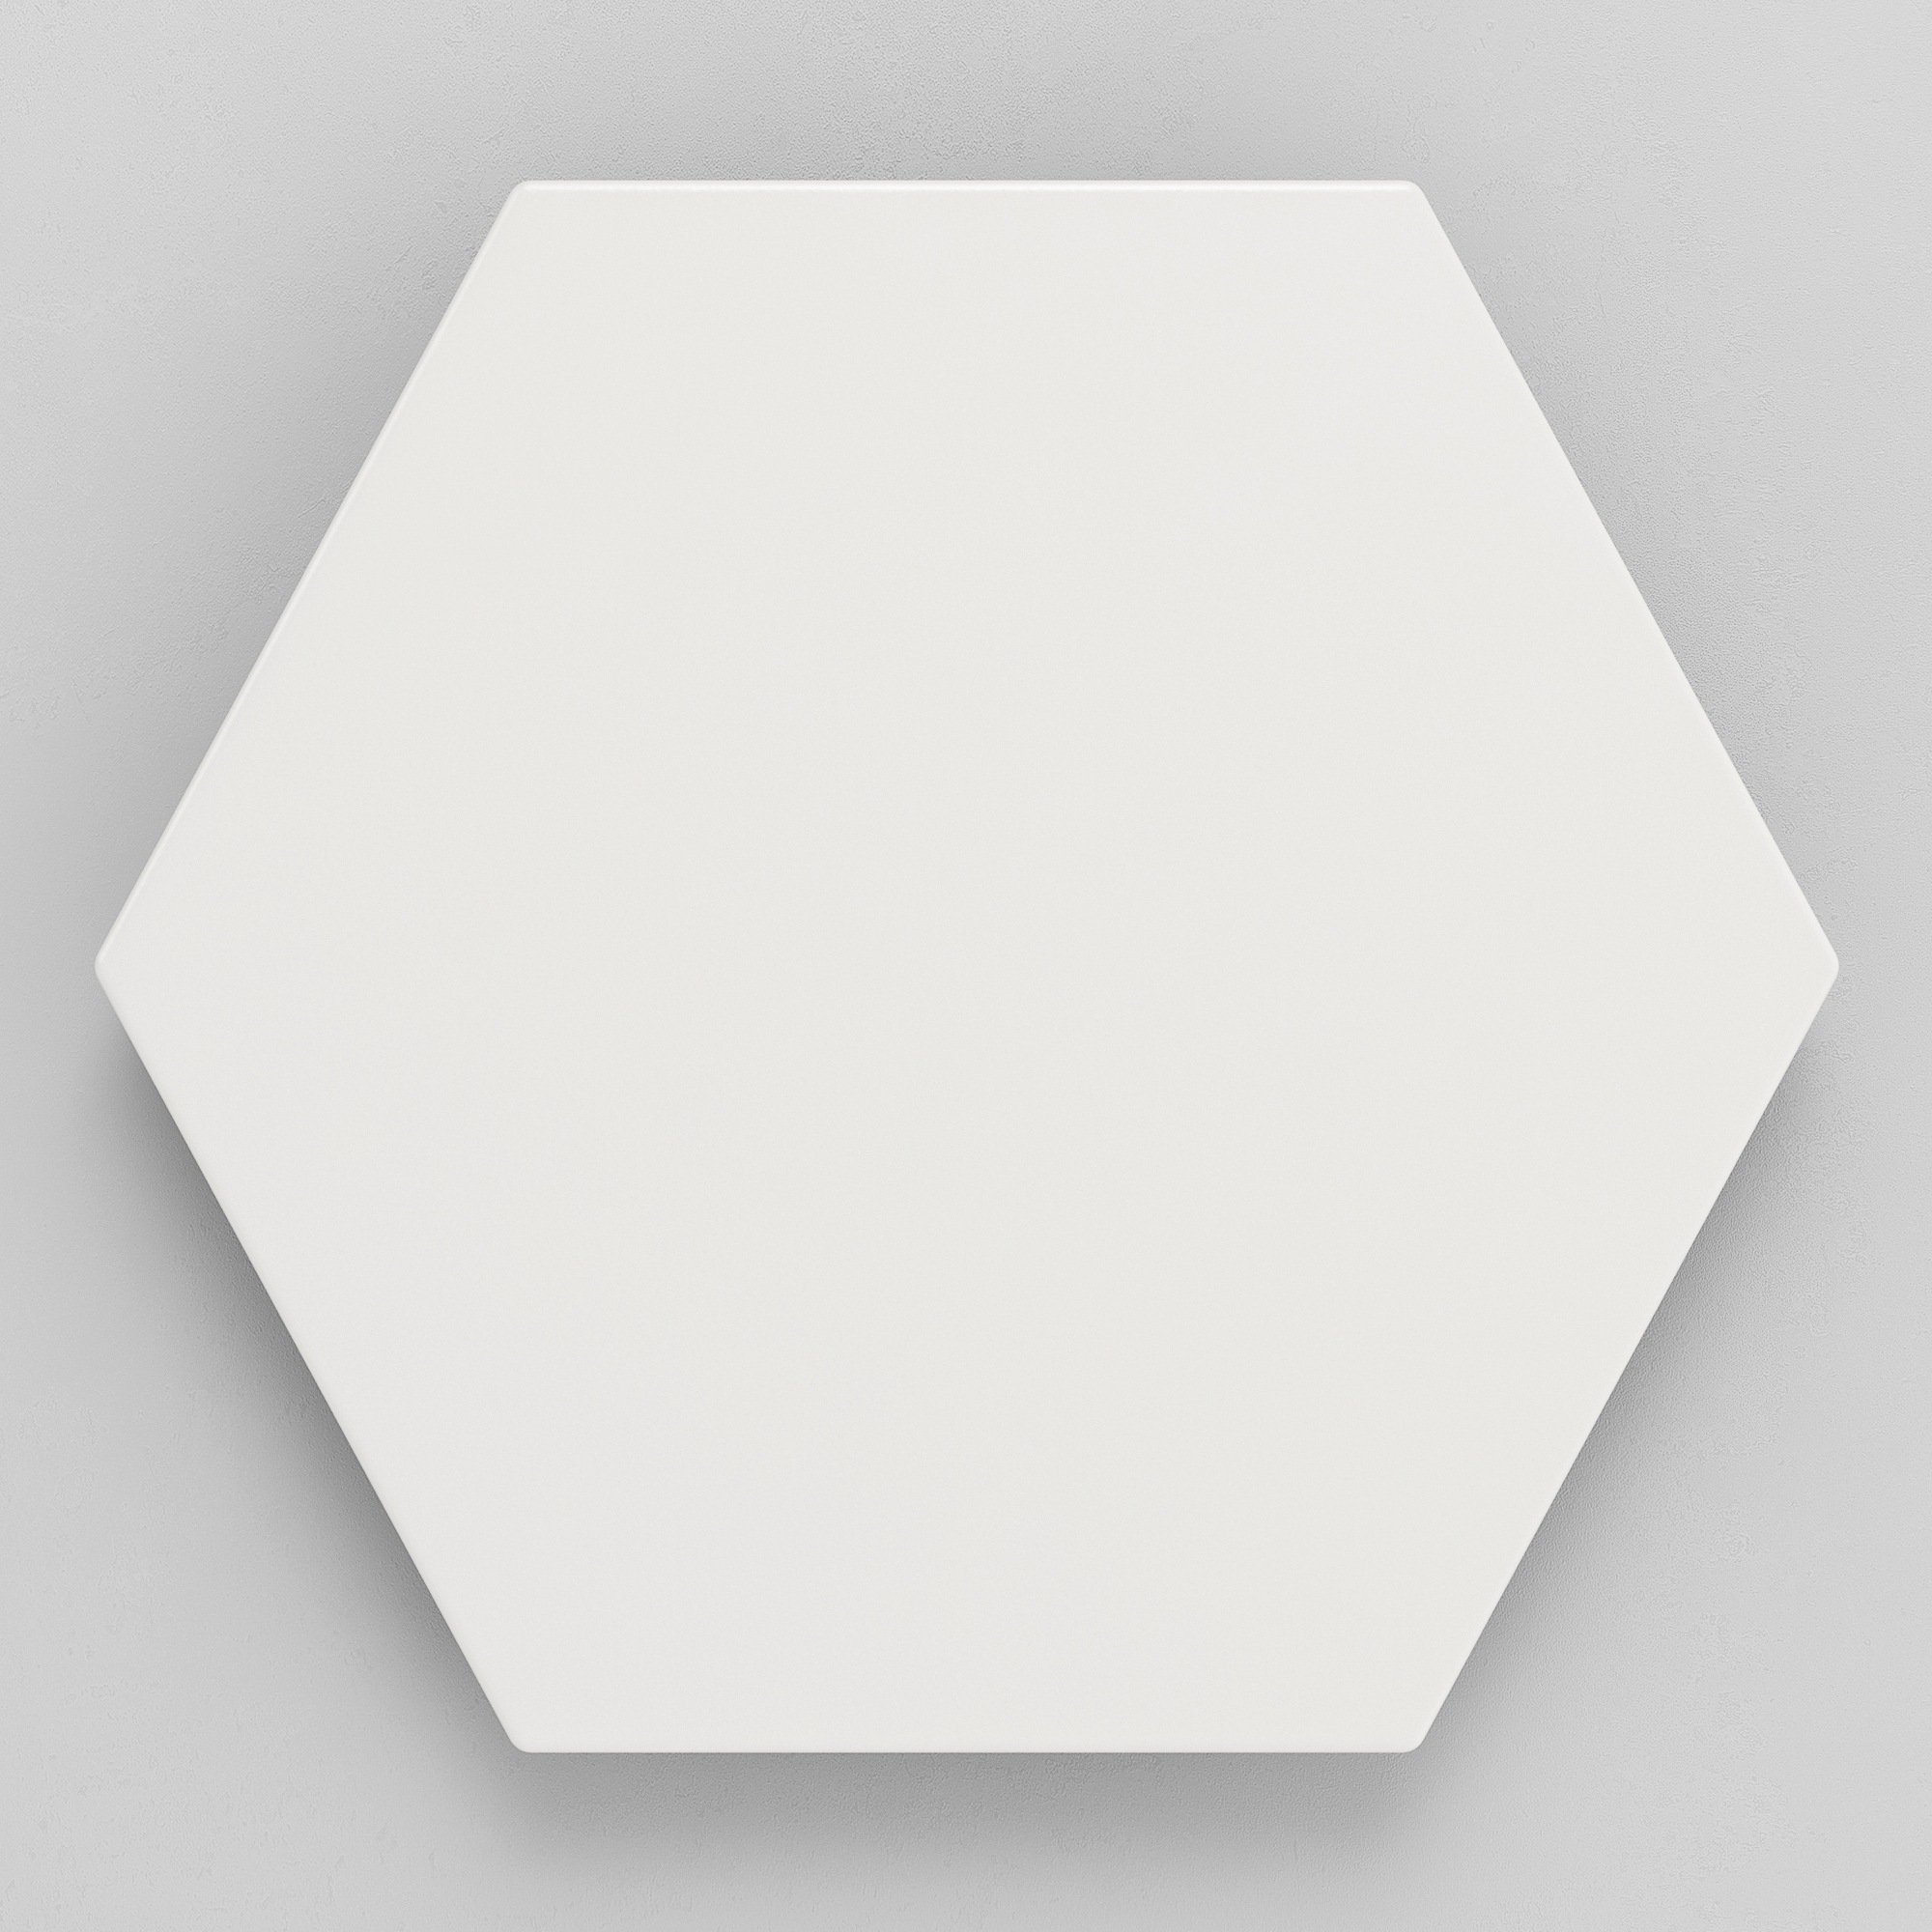 Hexagon Fliese weiß Sechseckige Fliese SOLID WHITE Fliese